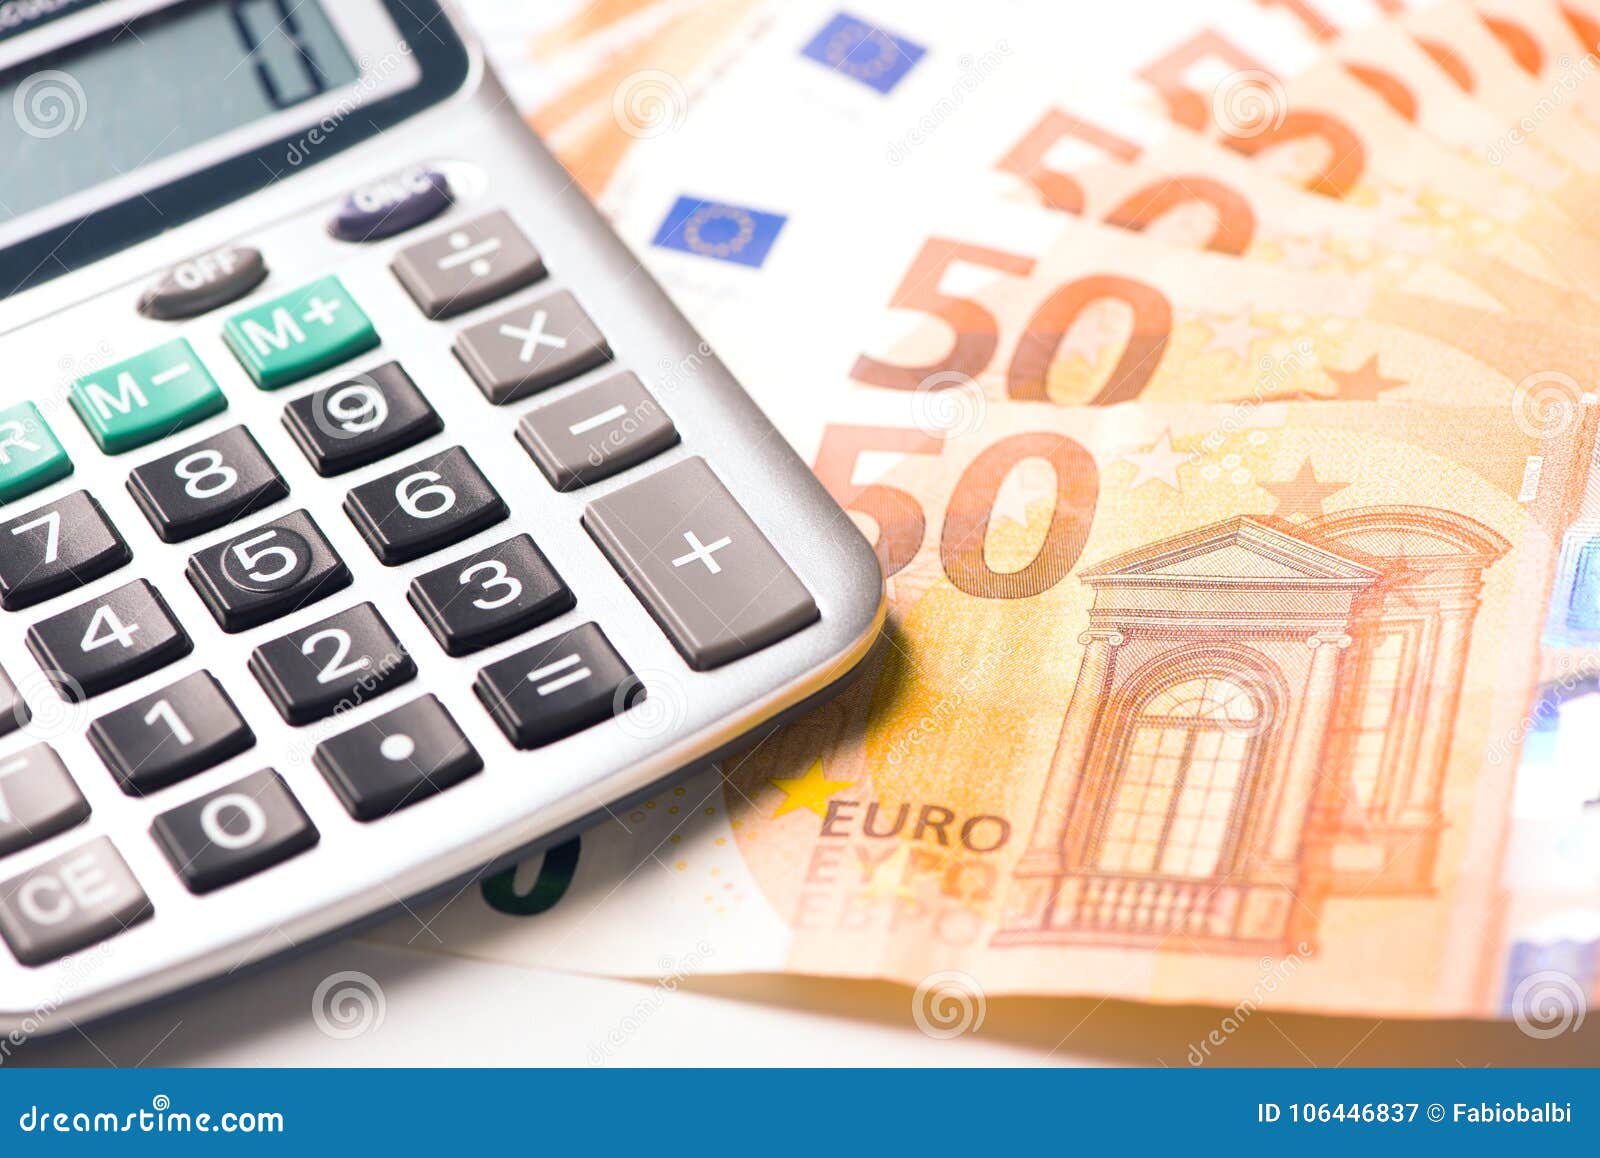 Калькулятор евро в доллары на сегодня. Калькулятор евро. Купить продать валюту калькулятор.